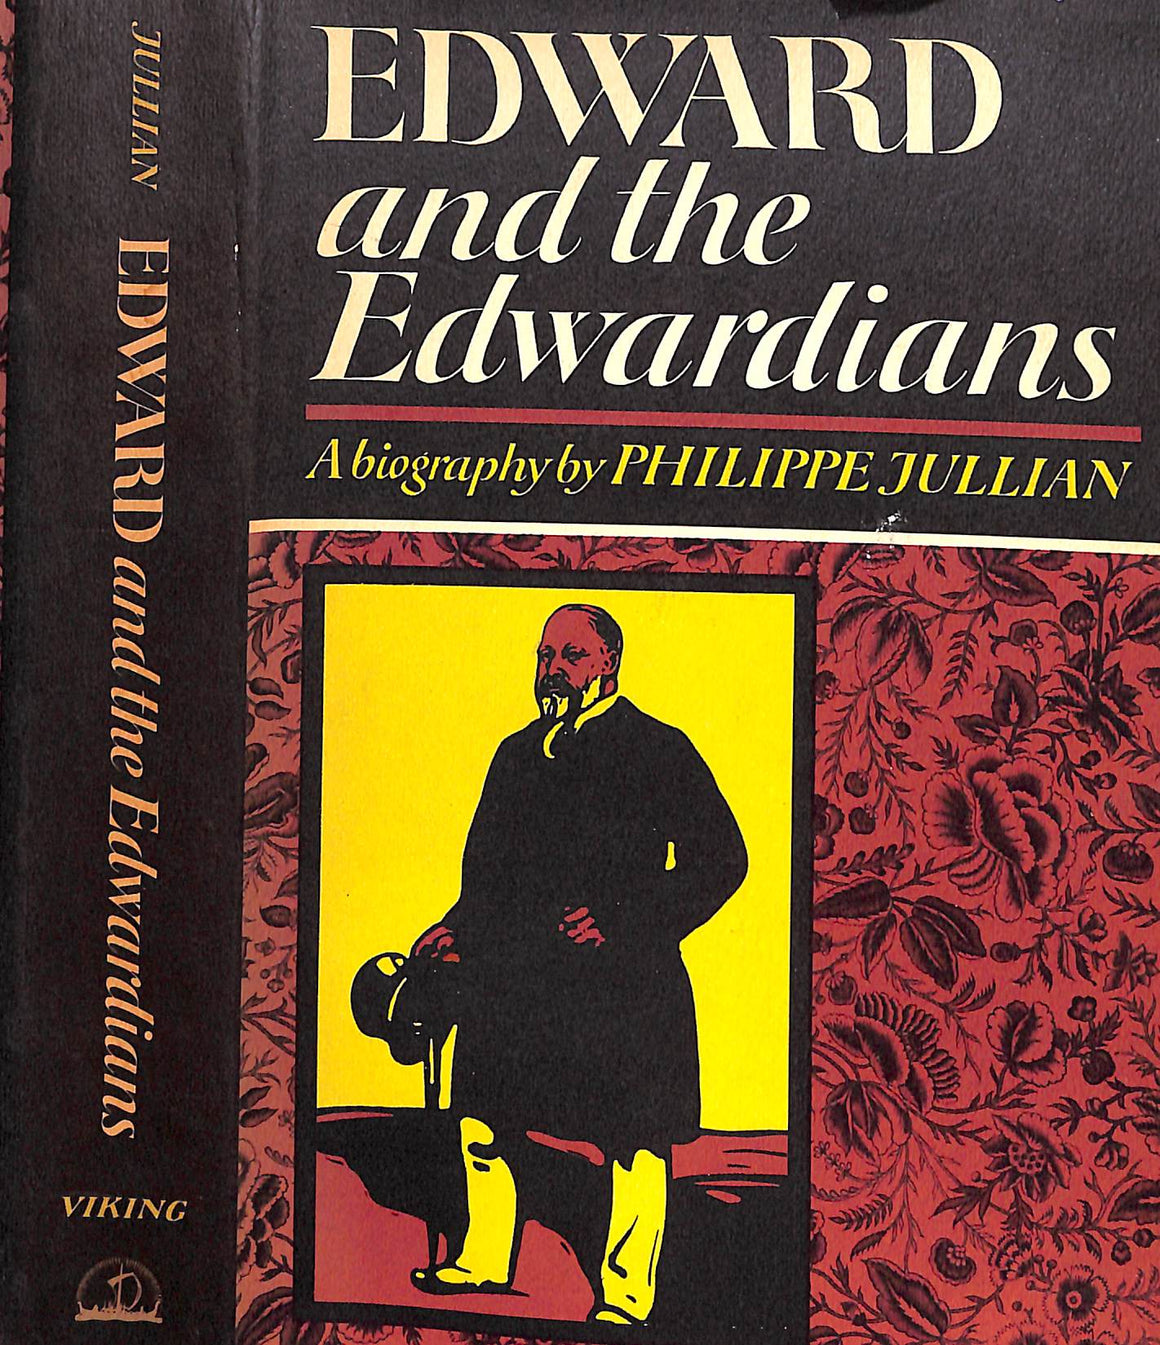 "Edward And The Edwardians" 1967 JULLIAN, Philippe